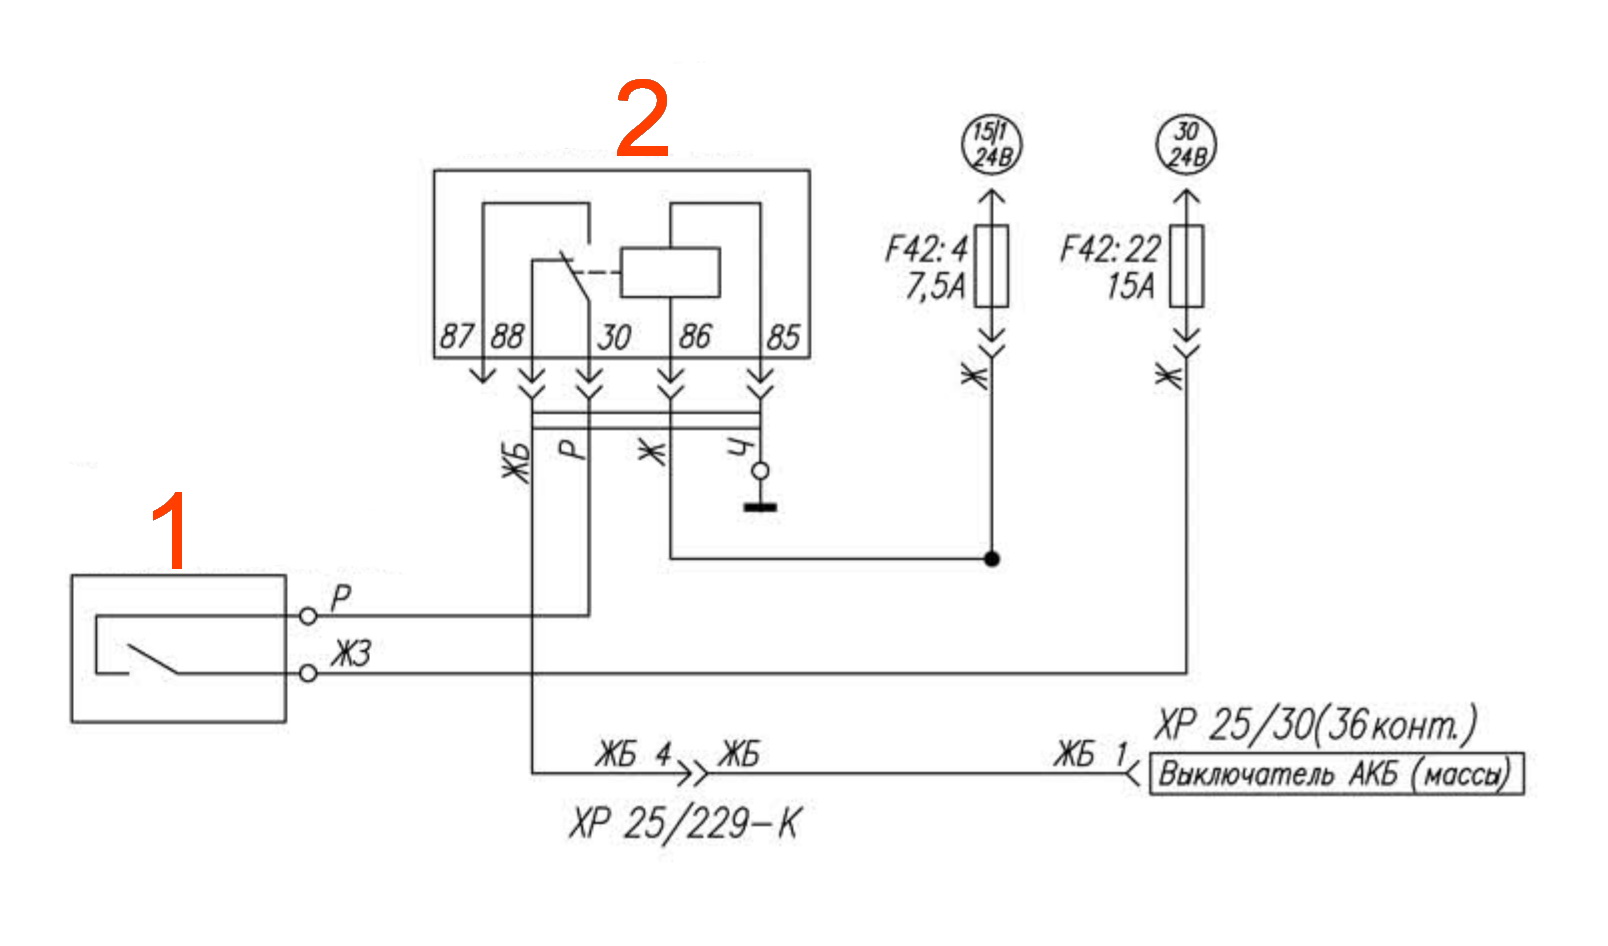 Электрическая схема выключателя АКБ (массы) УРАЛ Next. | Автотема